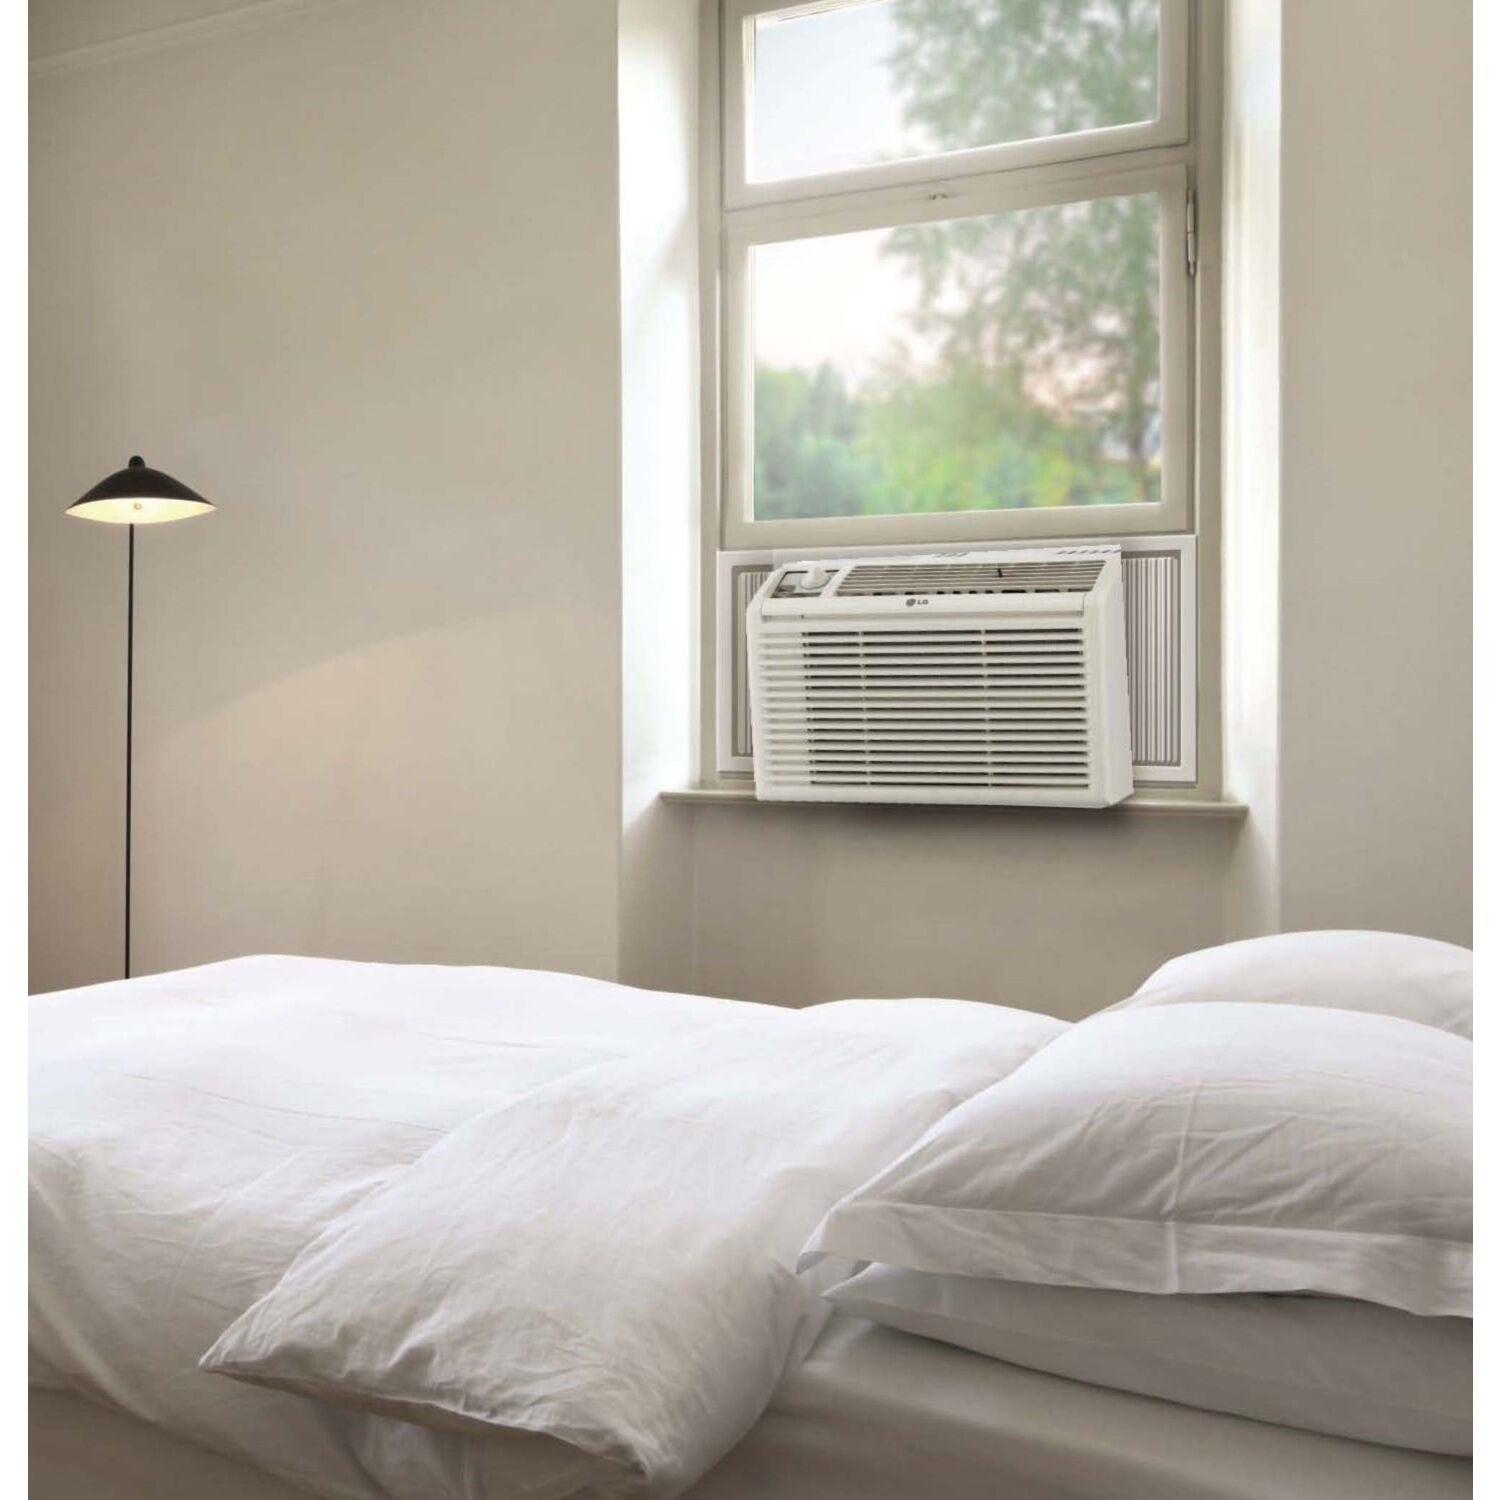 LG - 5,000 BTU Window Air Conditioner | LW5016